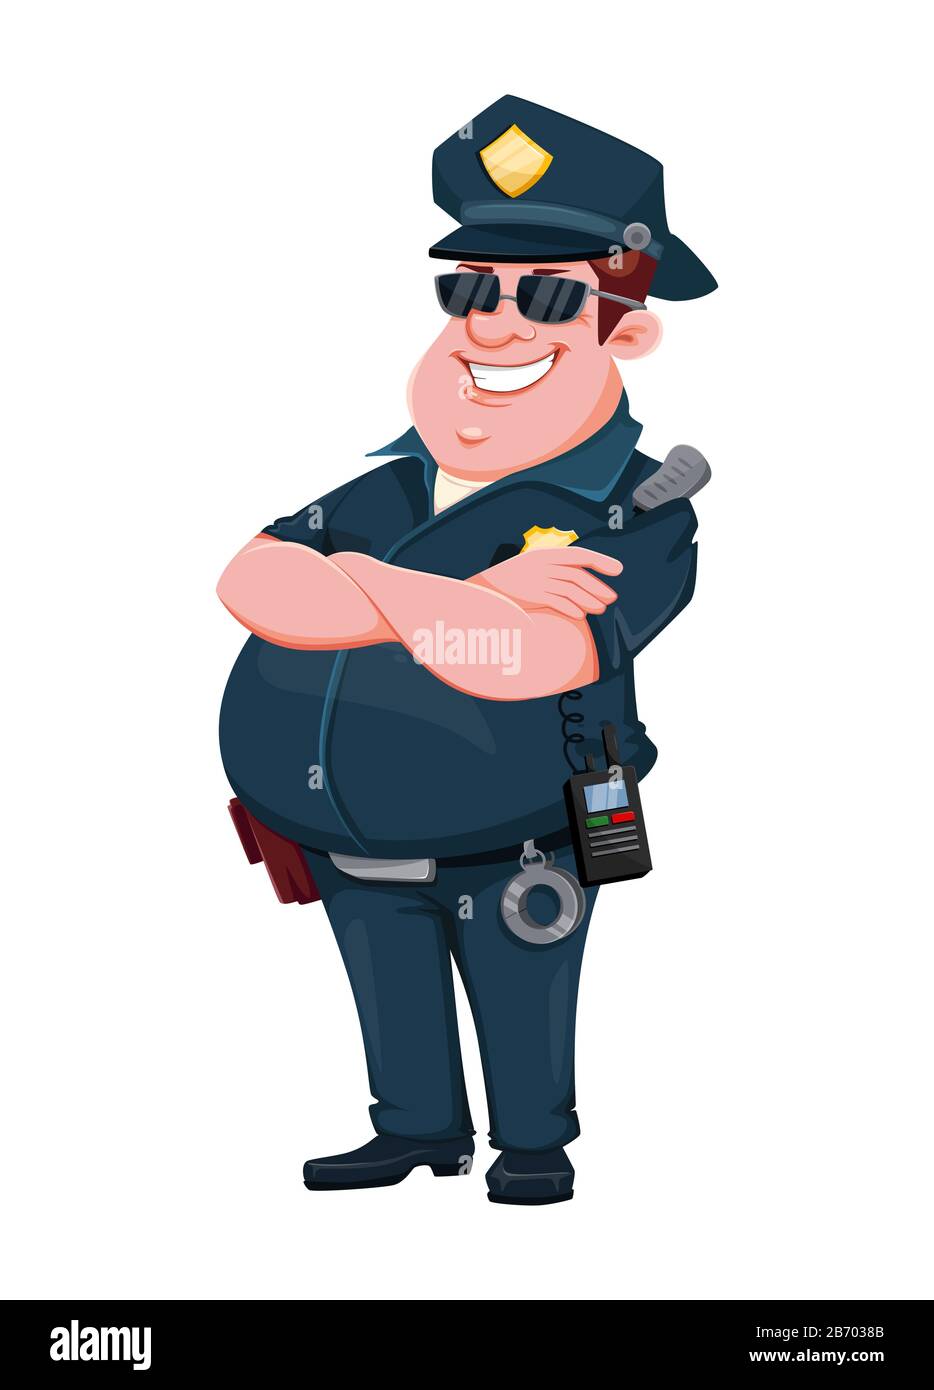 Policier. Personnage de dessin animé. Illustration vectorielle isolée sur fond blanc Illustration de Vecteur